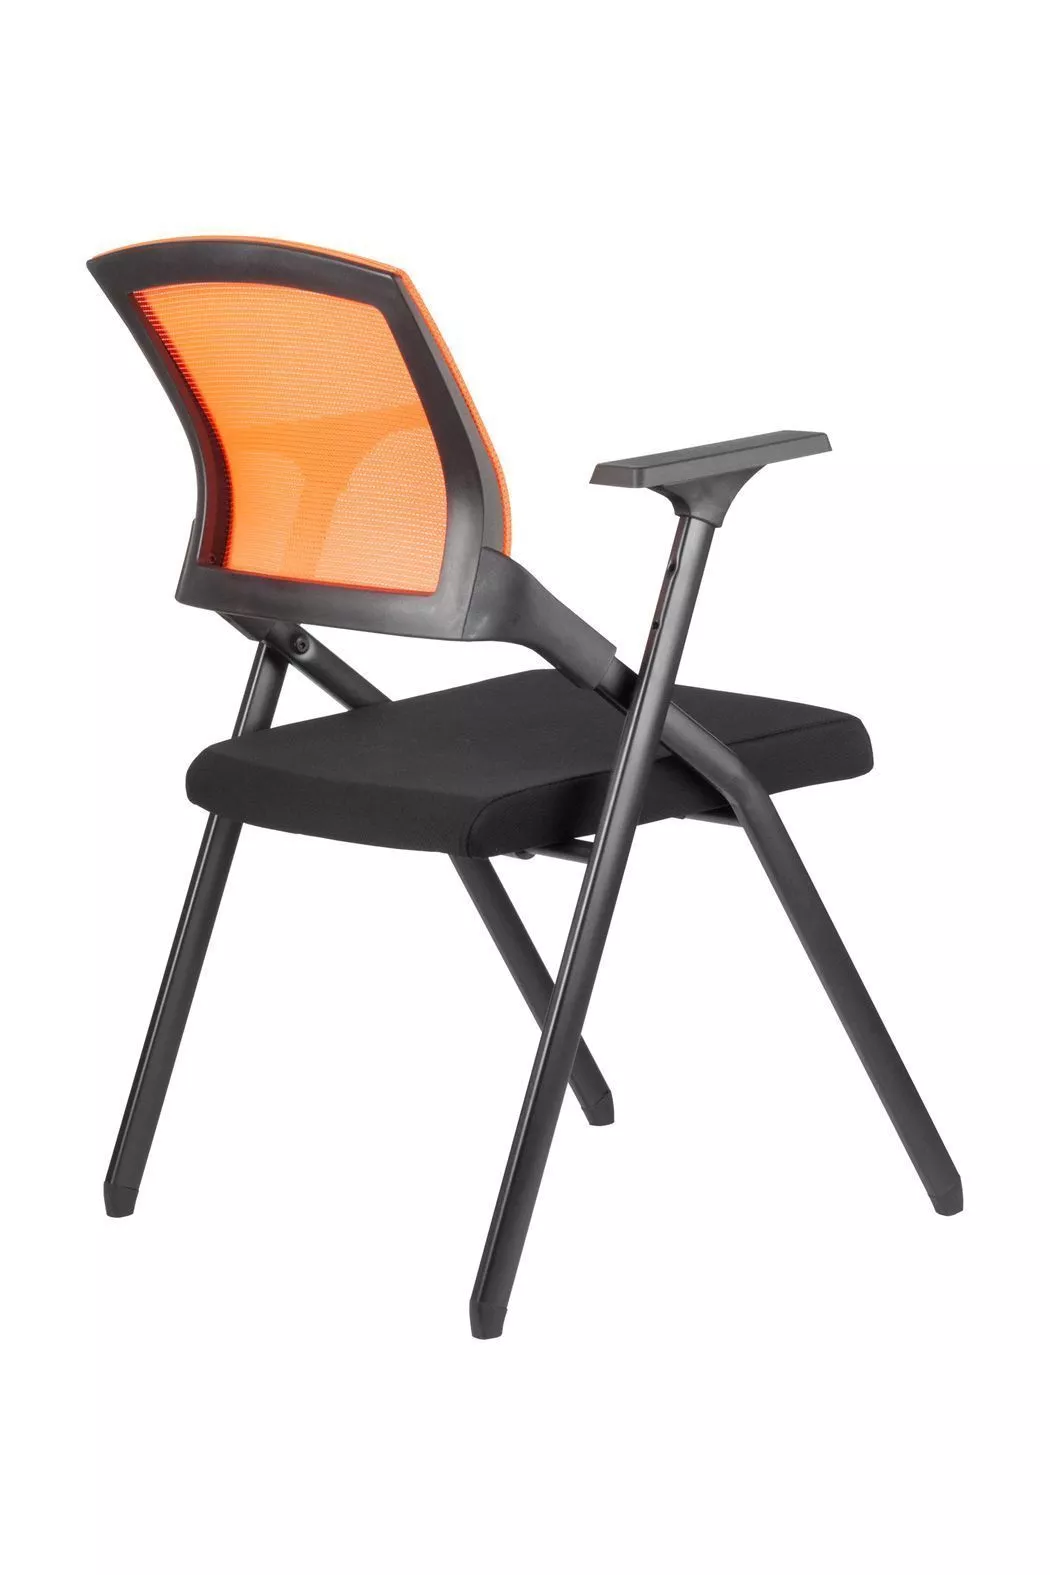 Кресло офисное складное Riva Chair Seat M2001 оранжевый / черный